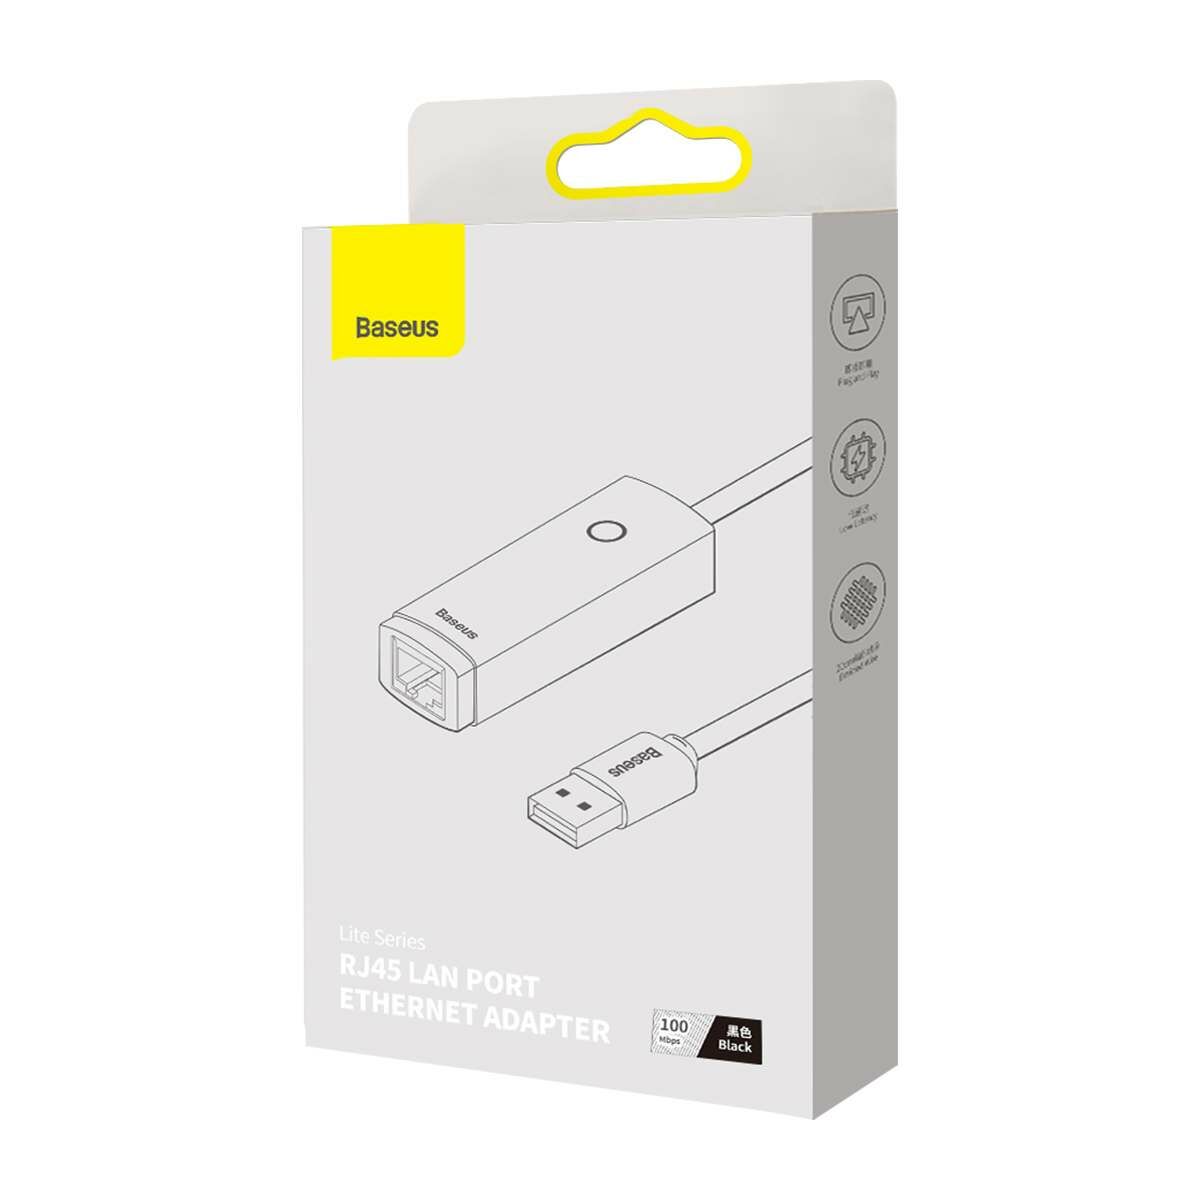 Kép 1/17 - Baseus HUB Lite Series Ethernet (USB-A bemenetről - RJ45 LAN port) adapter, 100Mbps, fekete (WKQX000001)